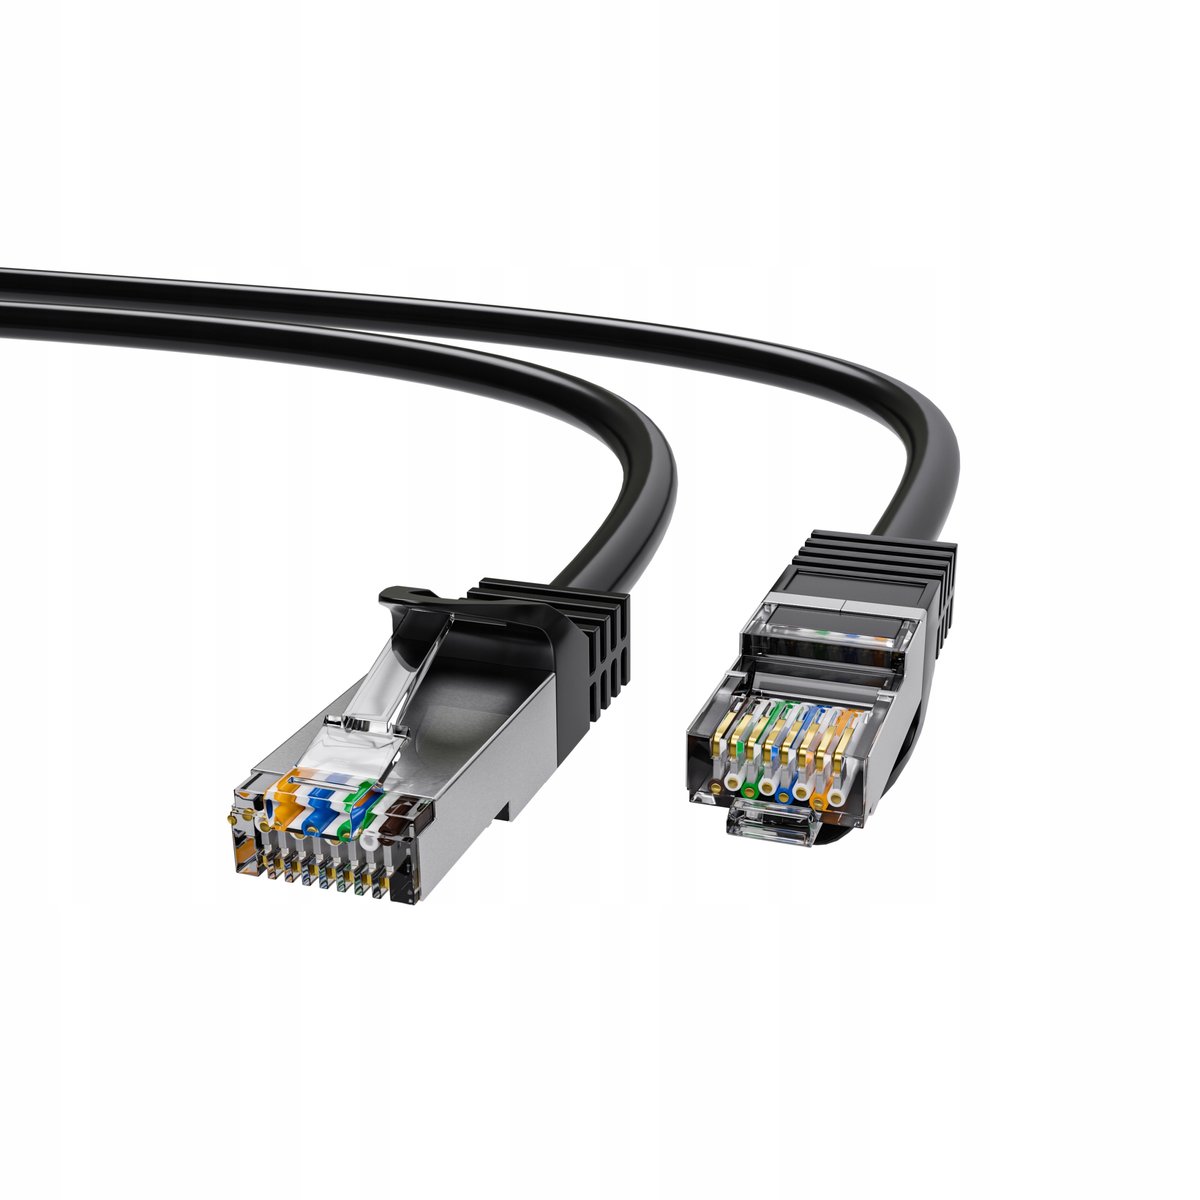 Zdjęcia - Pozostały sprzęt sieciowy ExtraLink Patchcord LAN Kat.5e FTP 0,5m Miedź Kabel sieciowy 